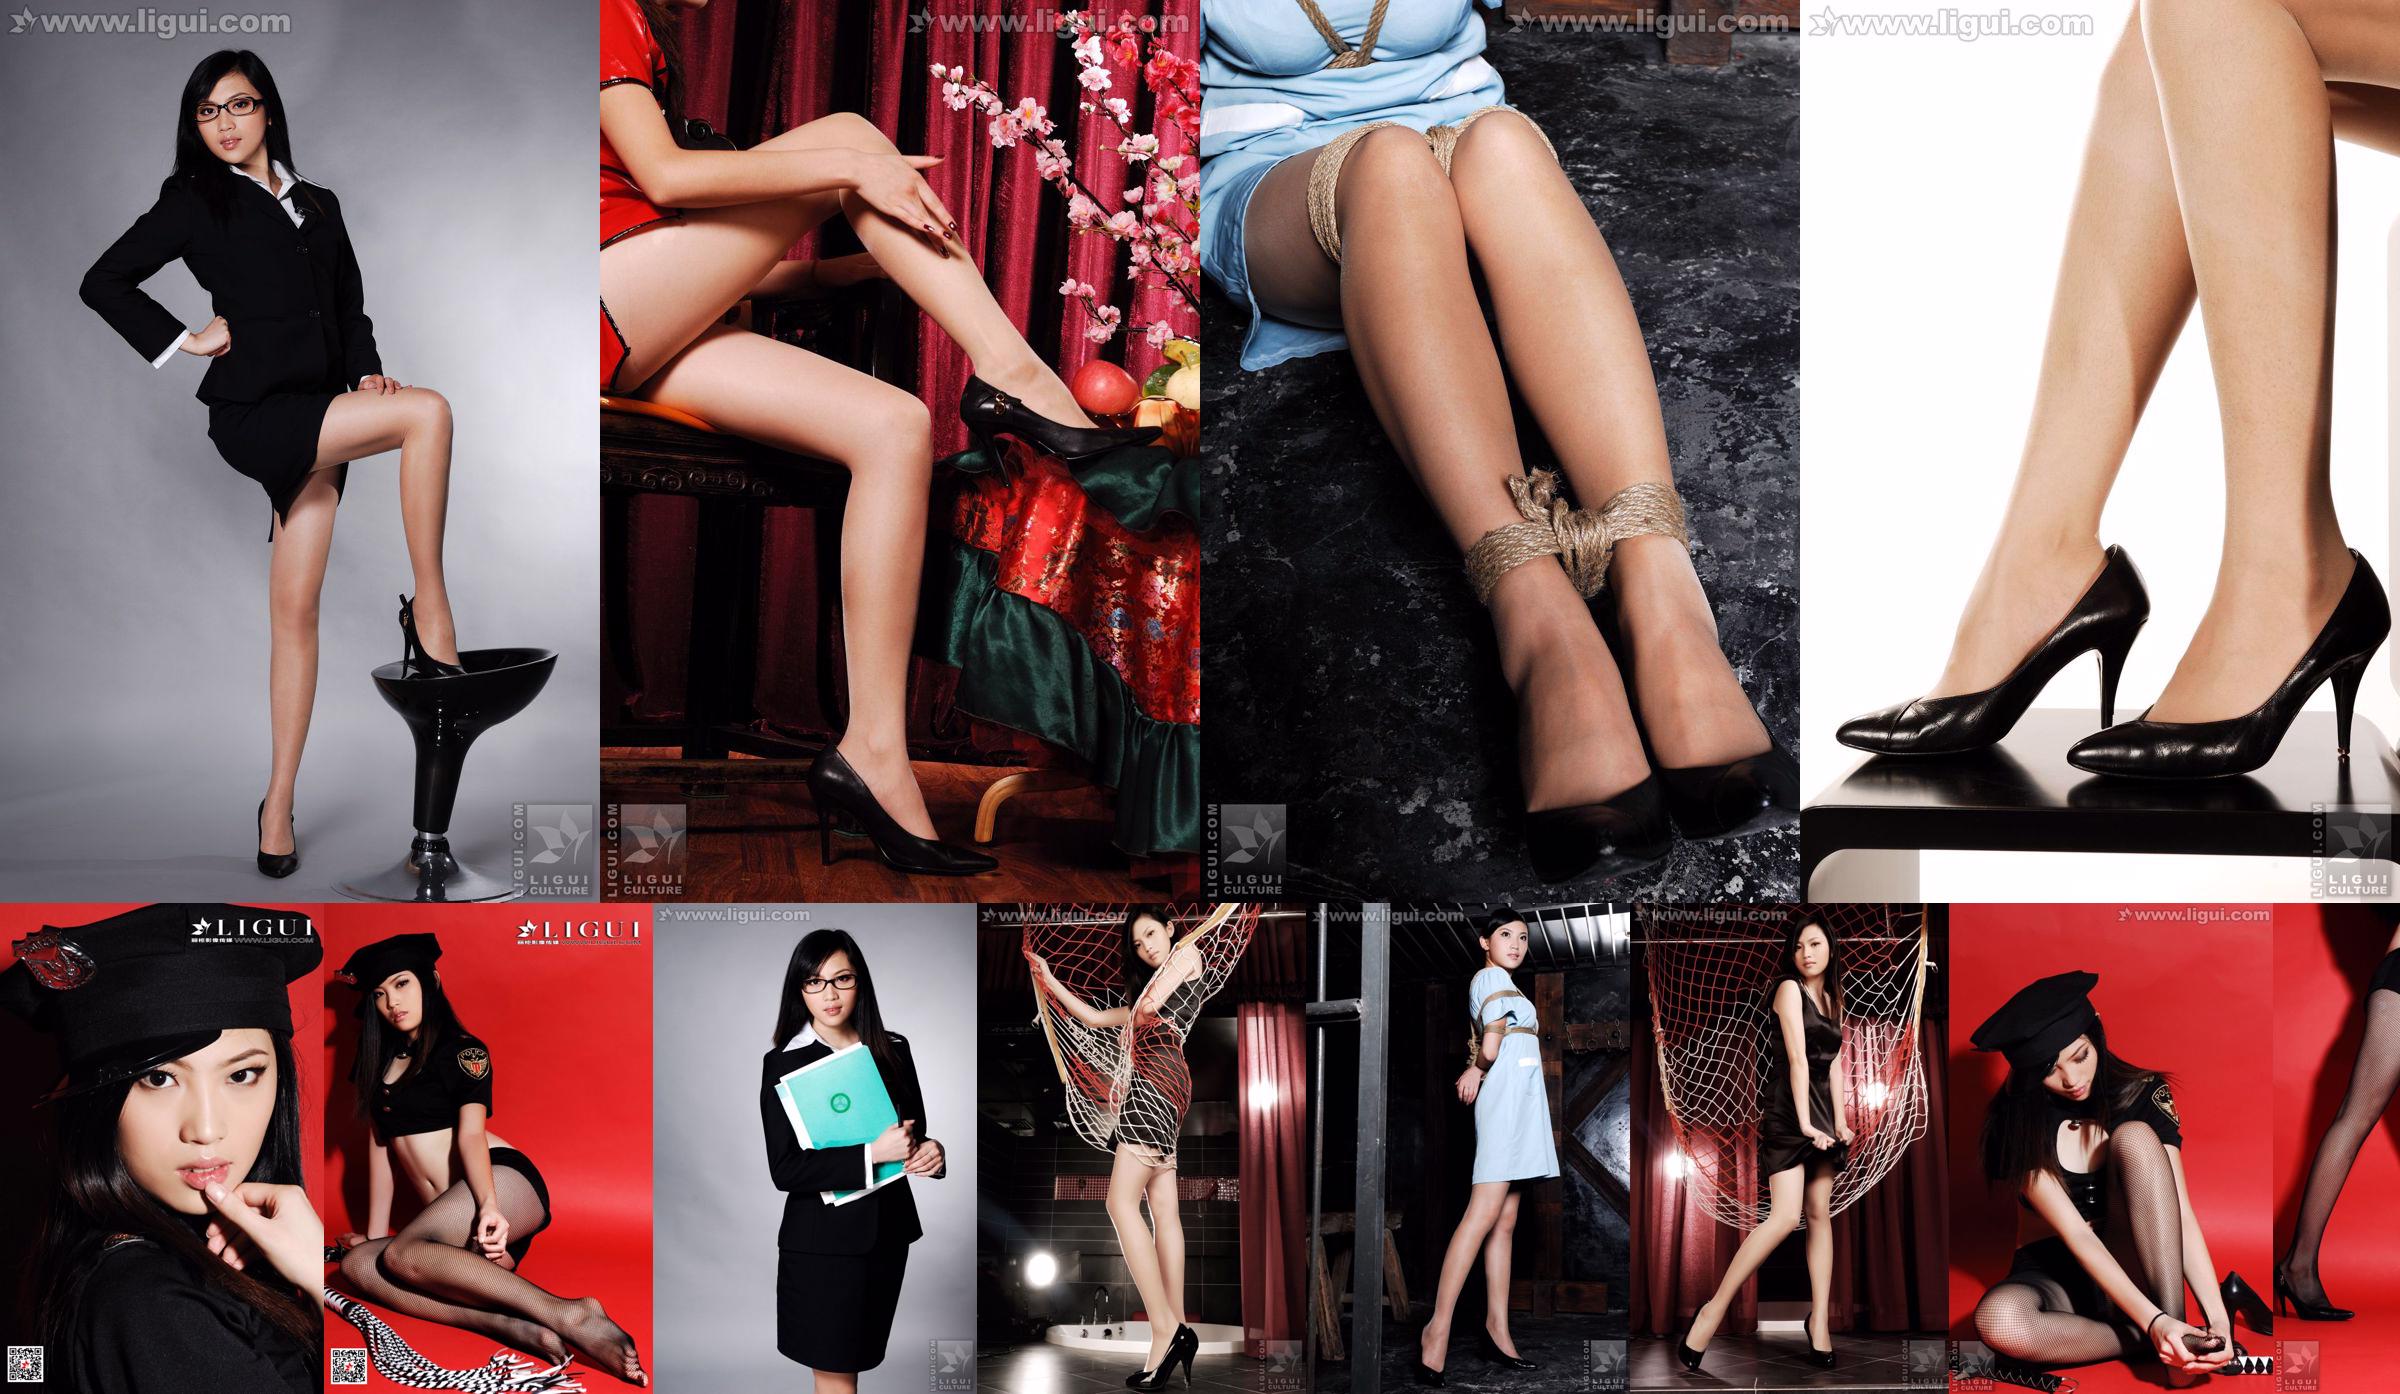 Modell Links Links "Luxus und edle High Heels" [Ligui LiGui] Bild von schönen Beinen und Jadefüßen No.7e8788 Seite 2